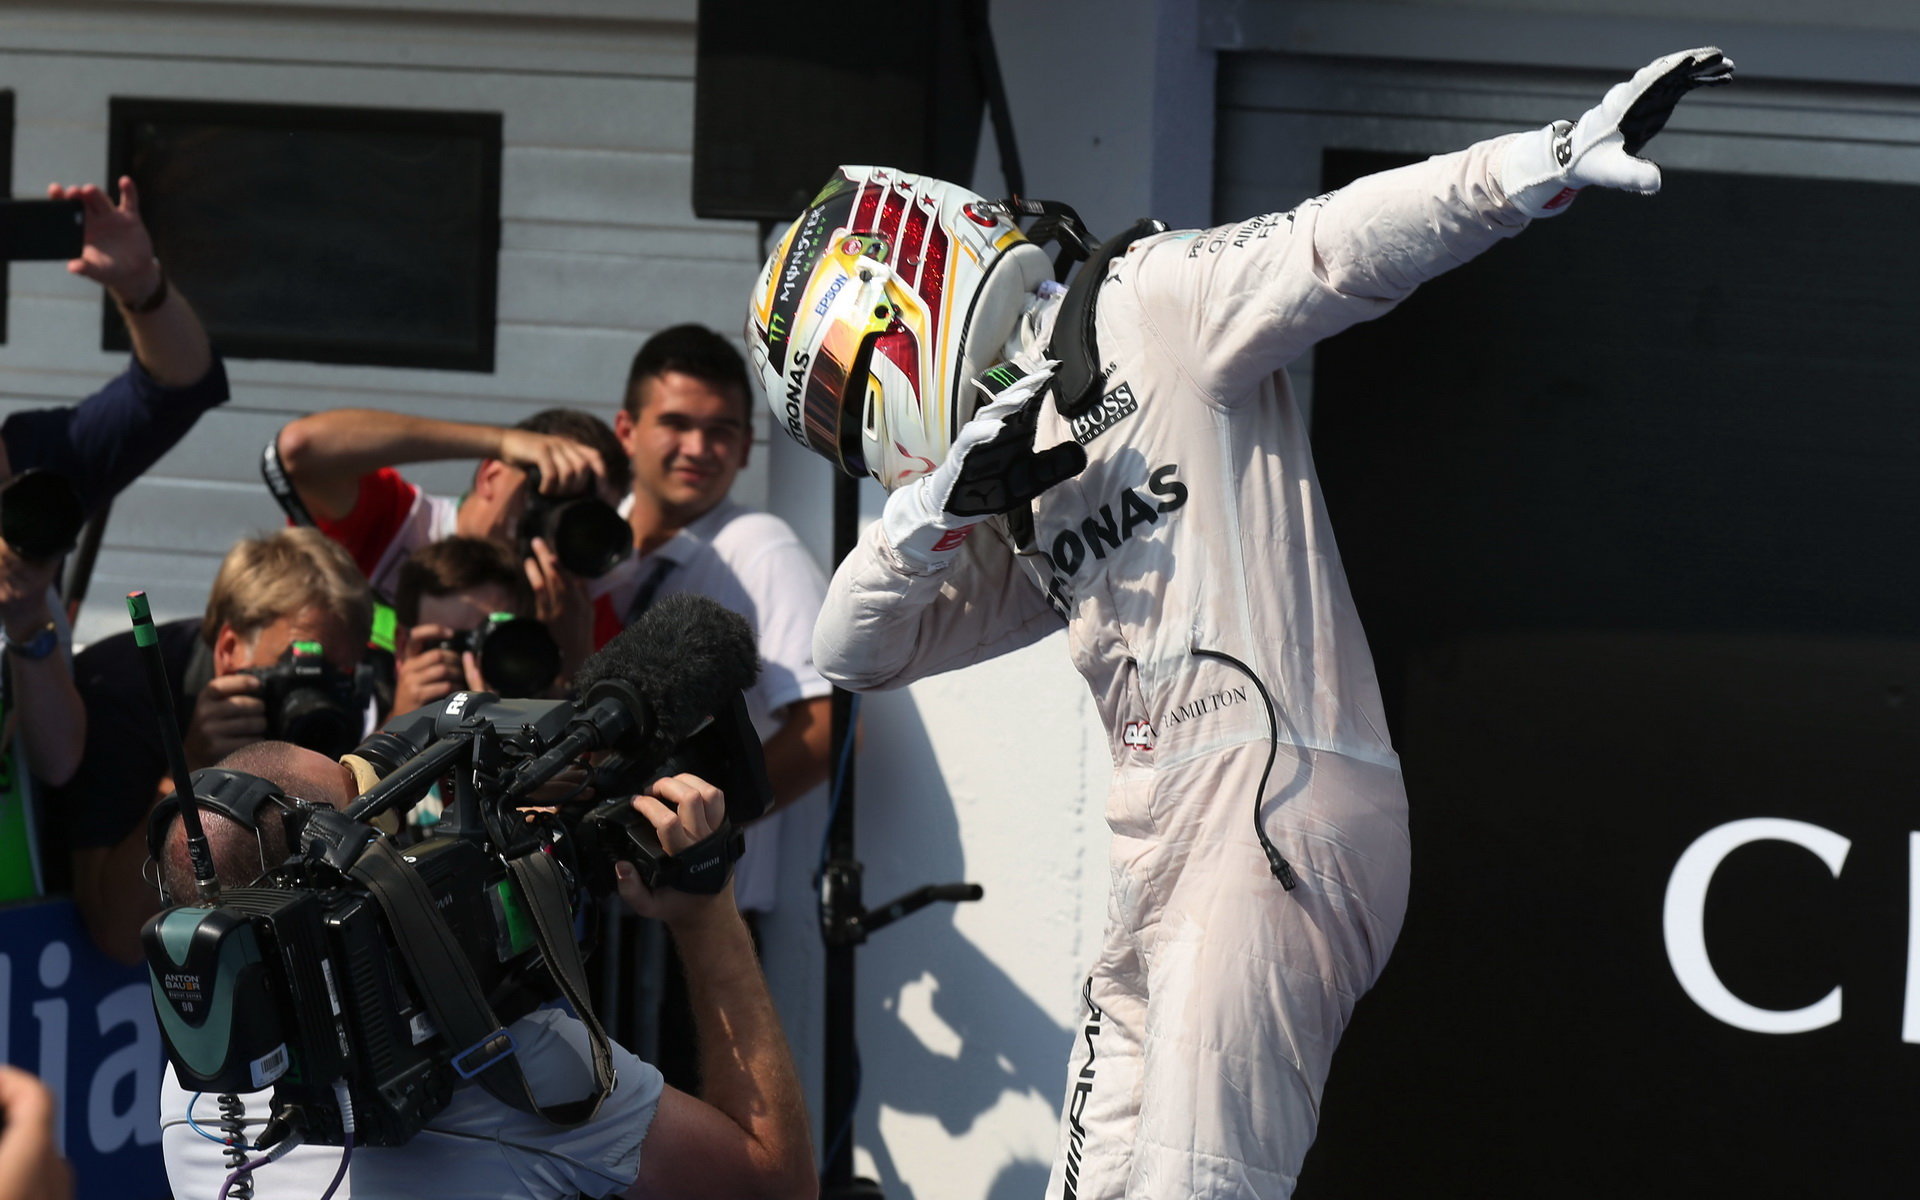 Lewis Hamilton se raduje z vítězství v závodě v Maďarsku